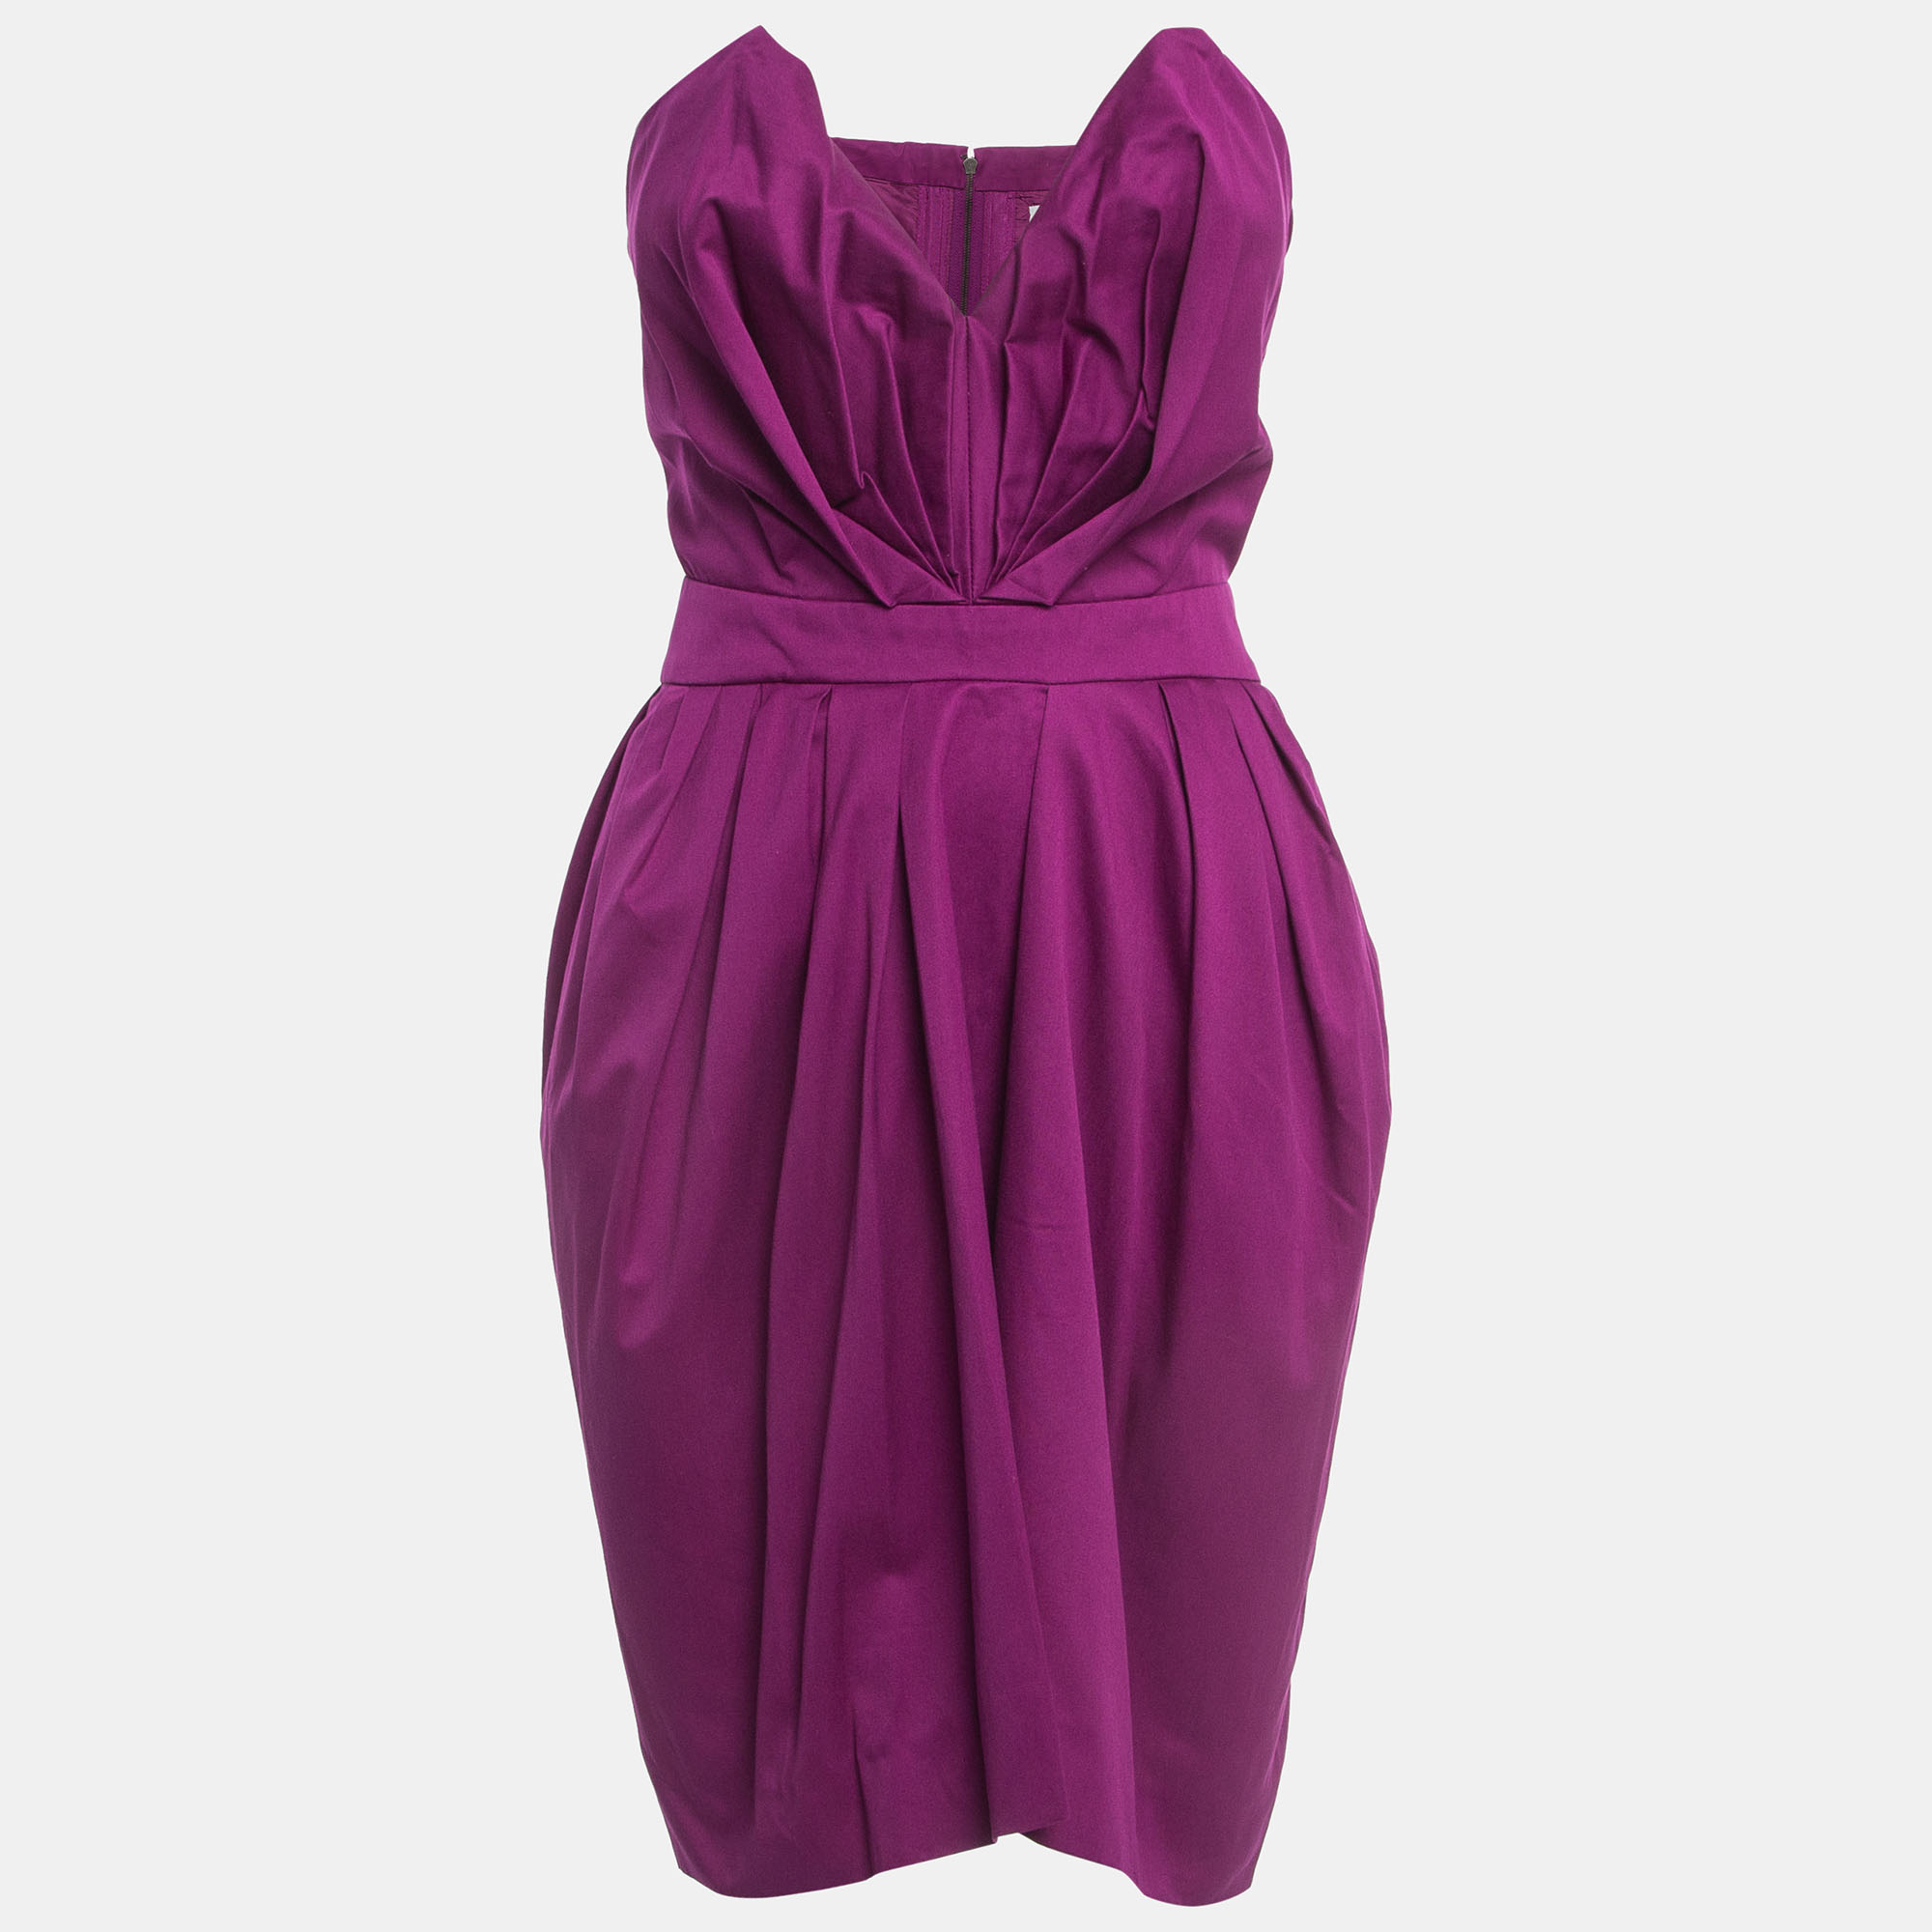 Yves saint laurent yves laurent paris purple cotton strapless pleated mini dress s